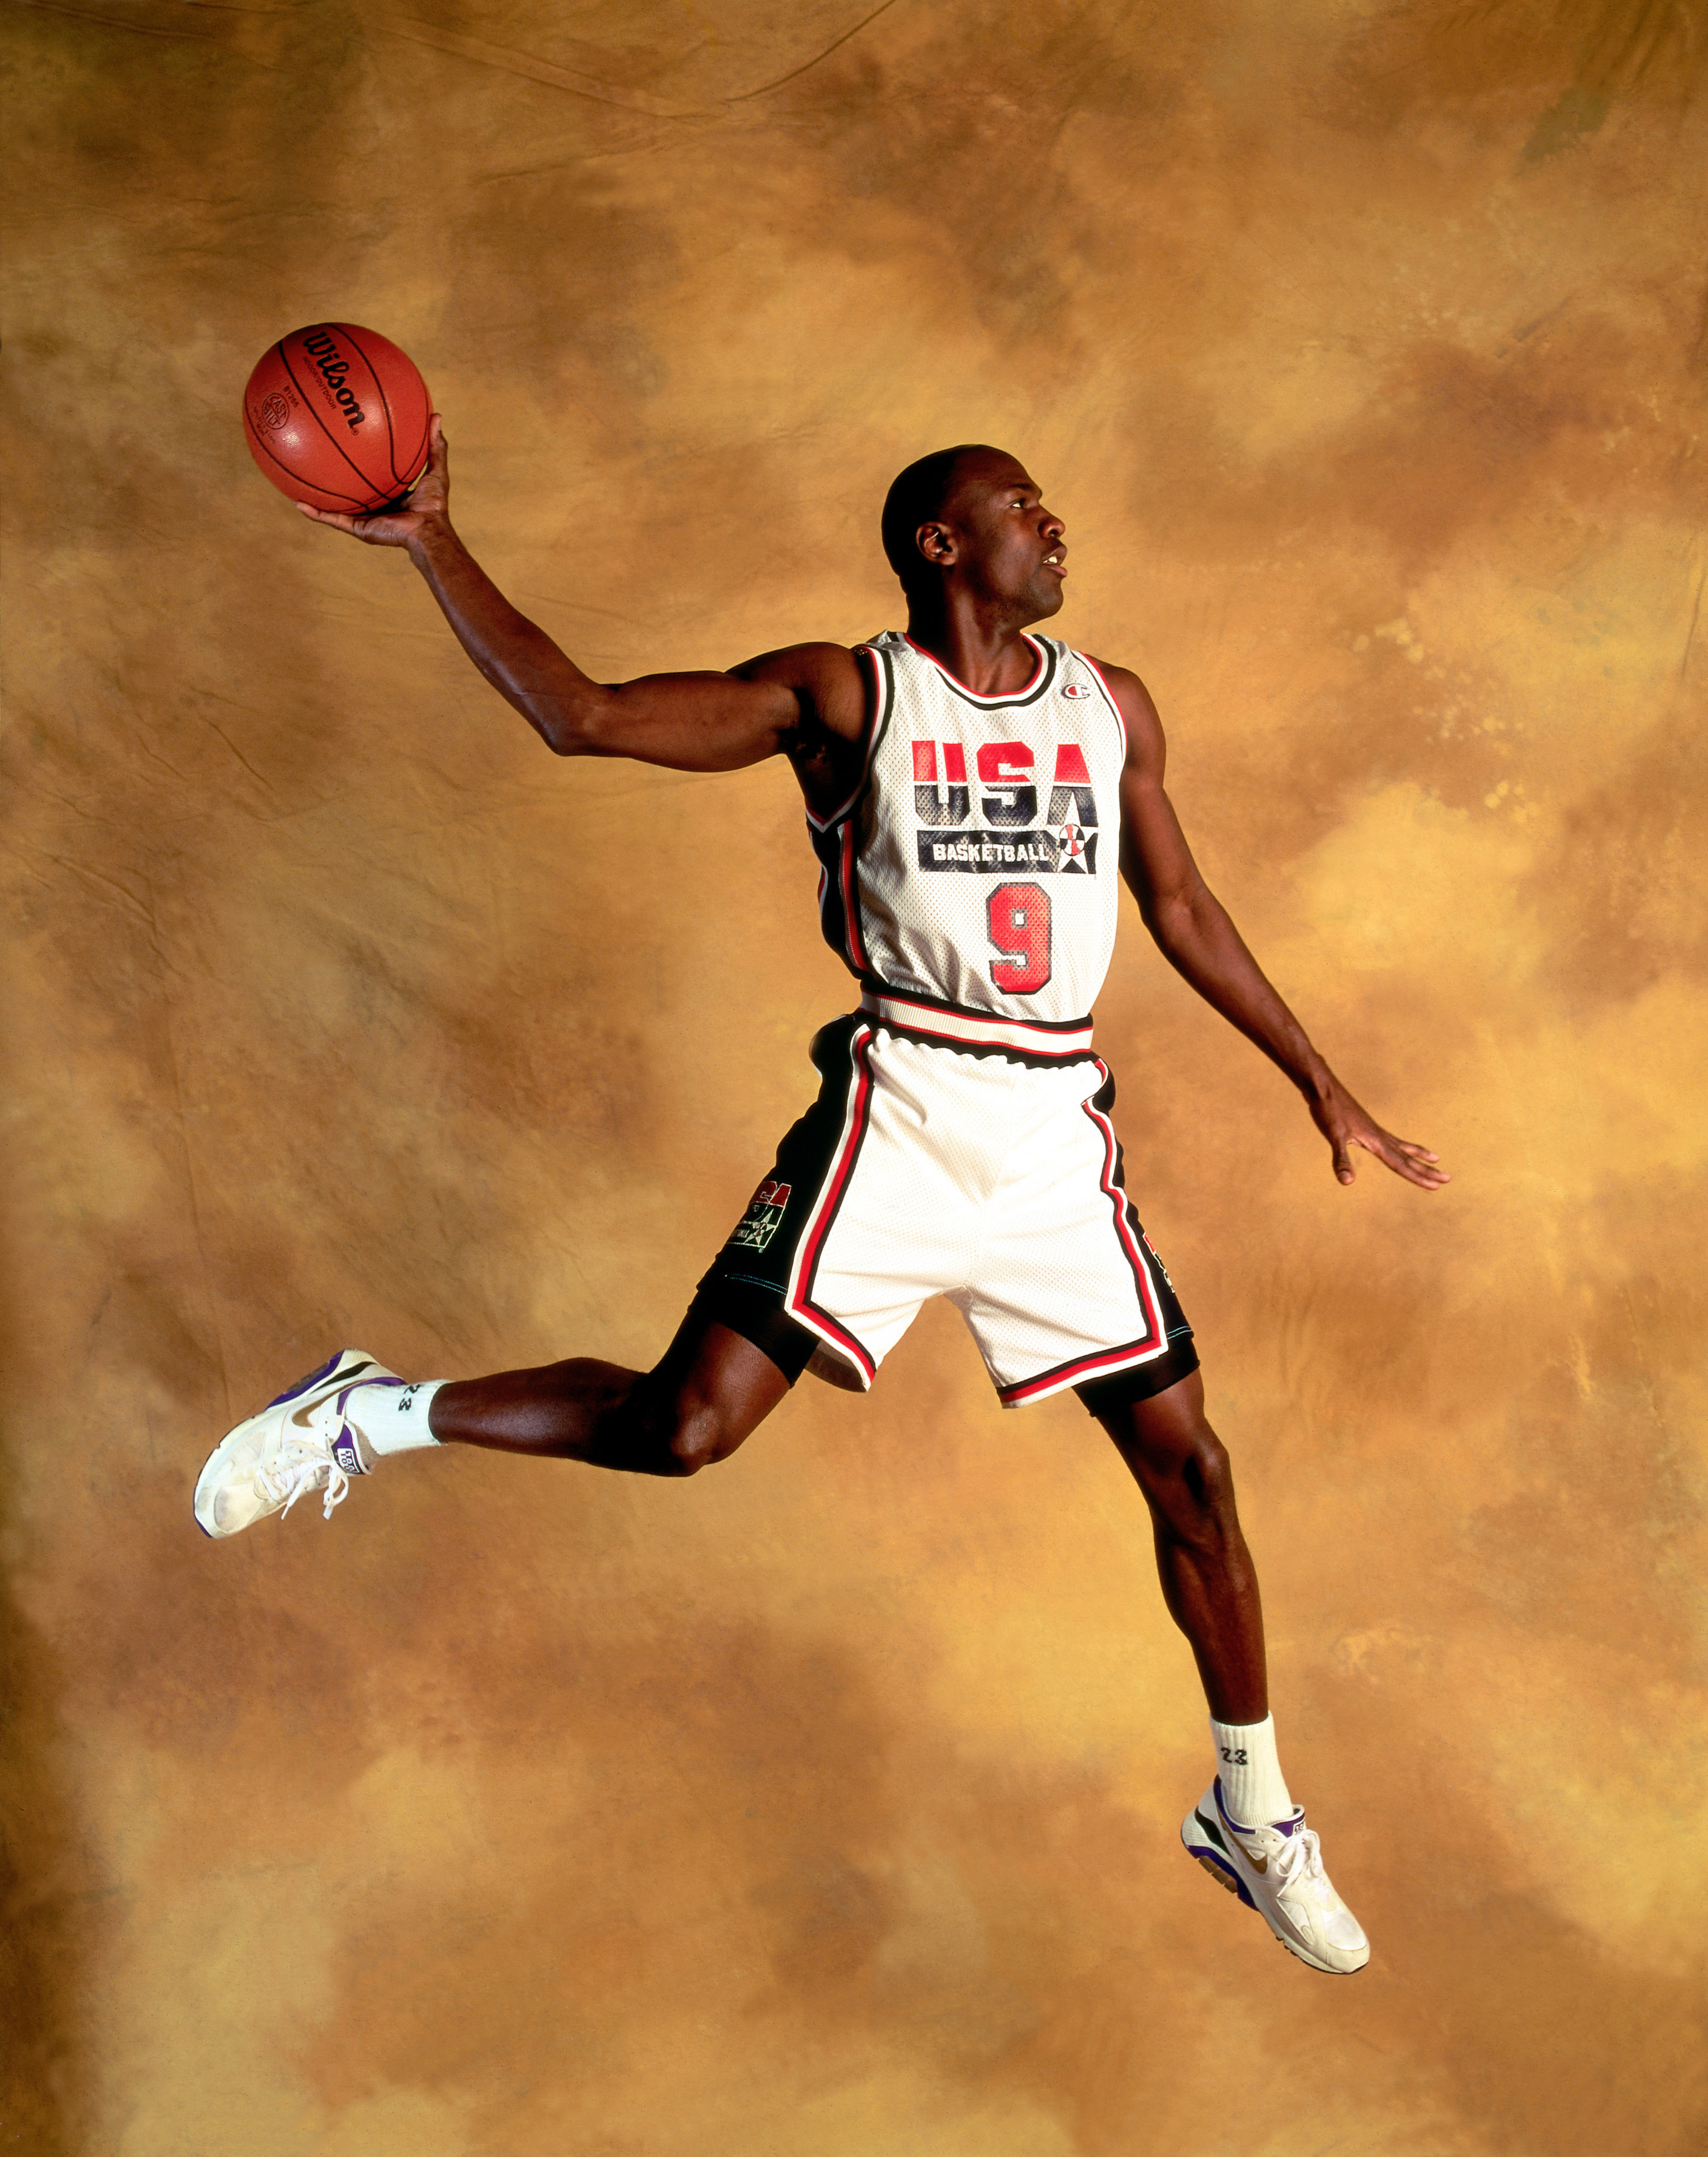 Michael Jordan wearing Nike Air 180 Concord